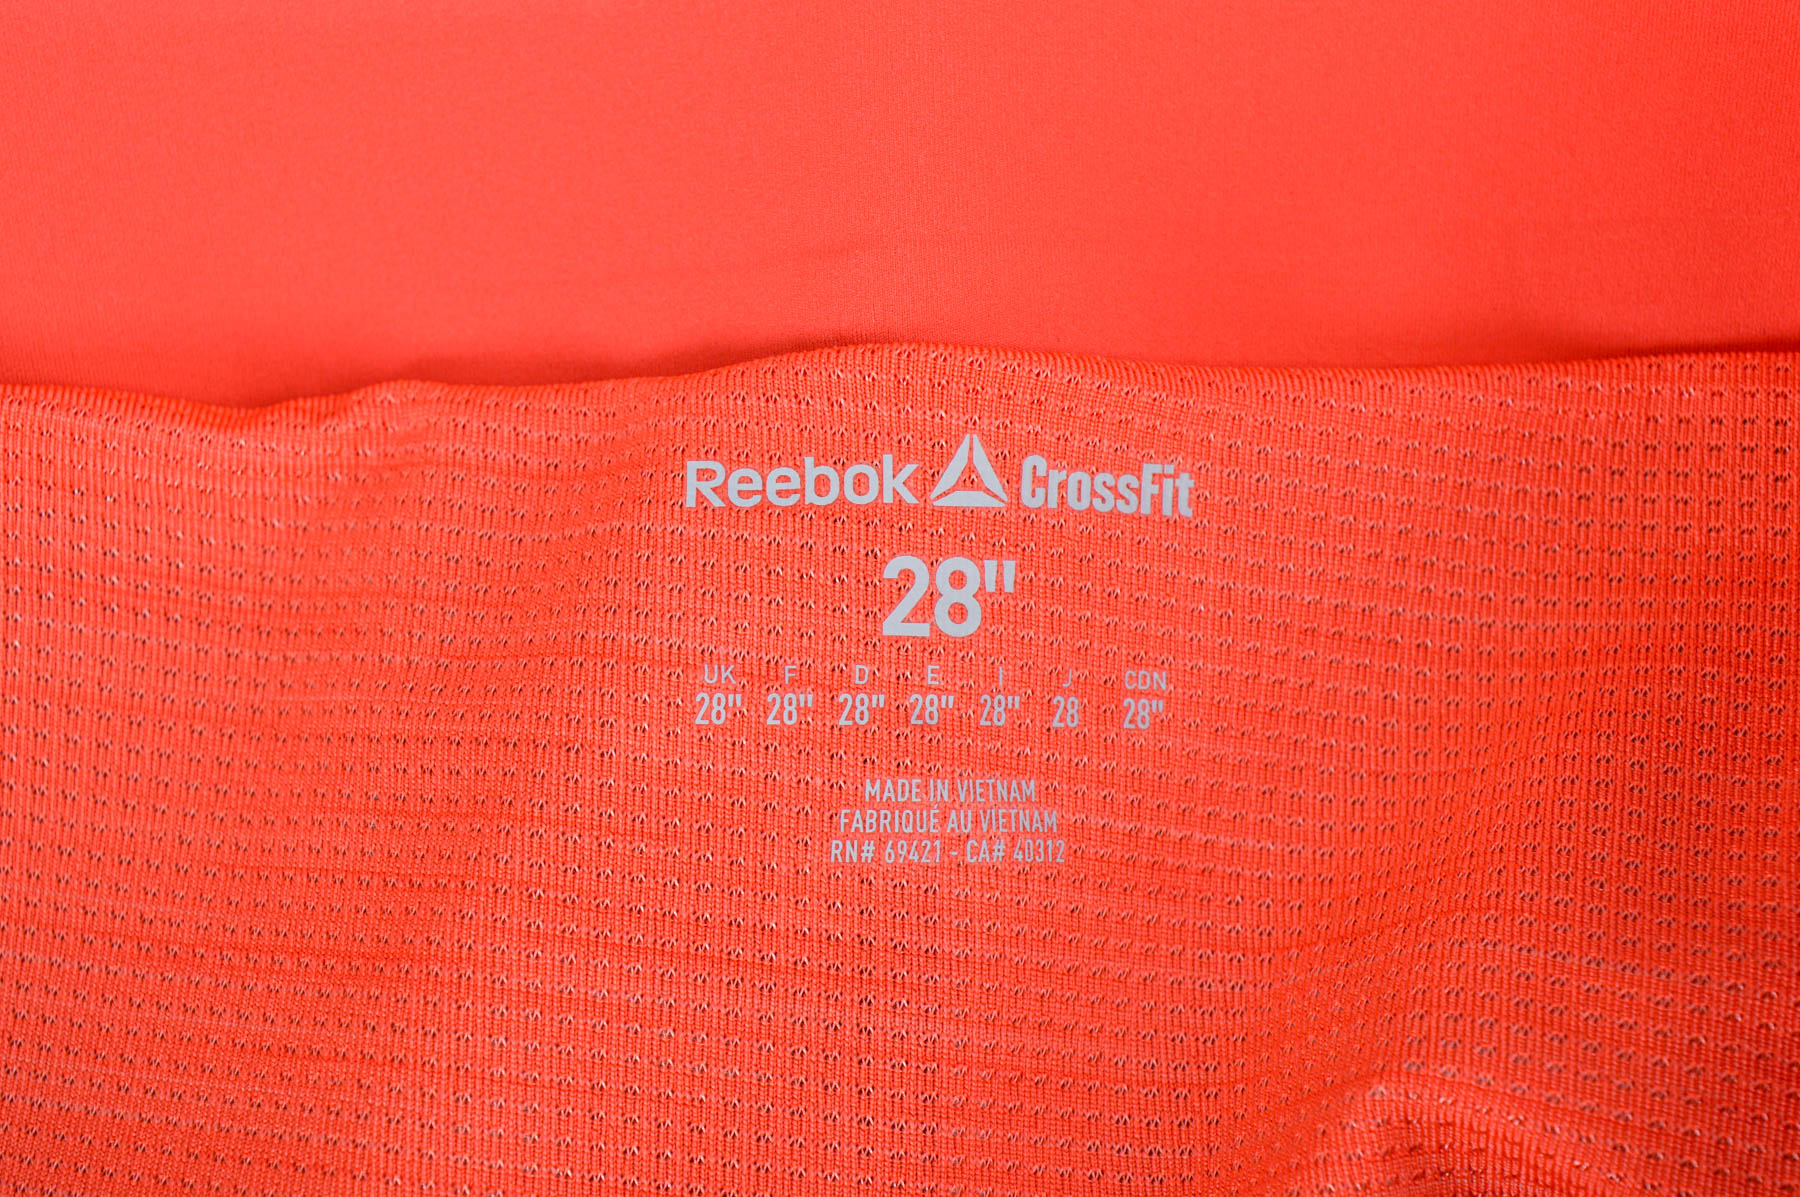 Șorturi de damă - Reebok Crossfit - 2